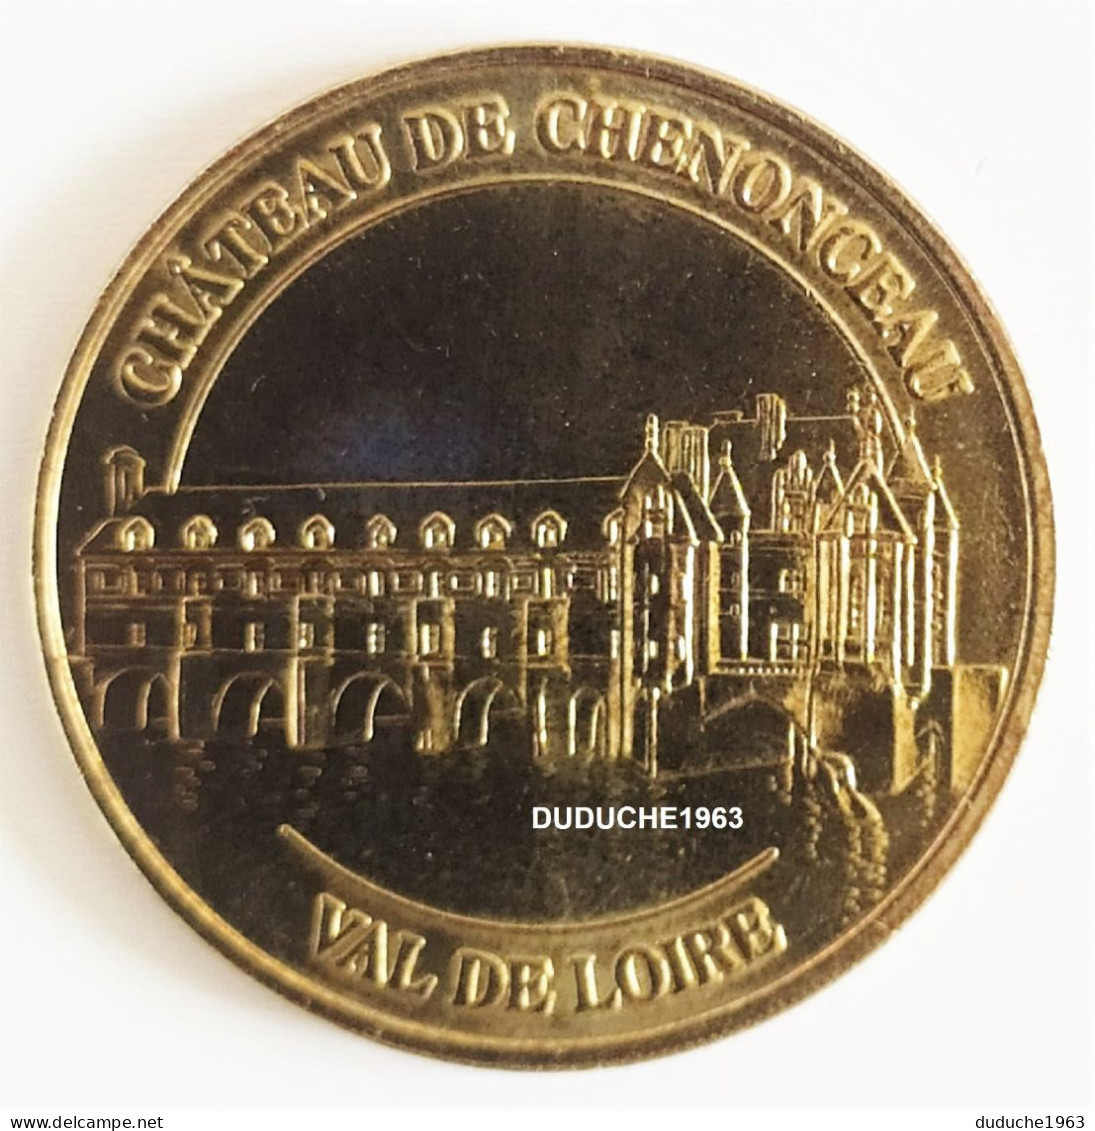 Monnaie De Paris 37.Château De Chenonceau 2005 - 2005